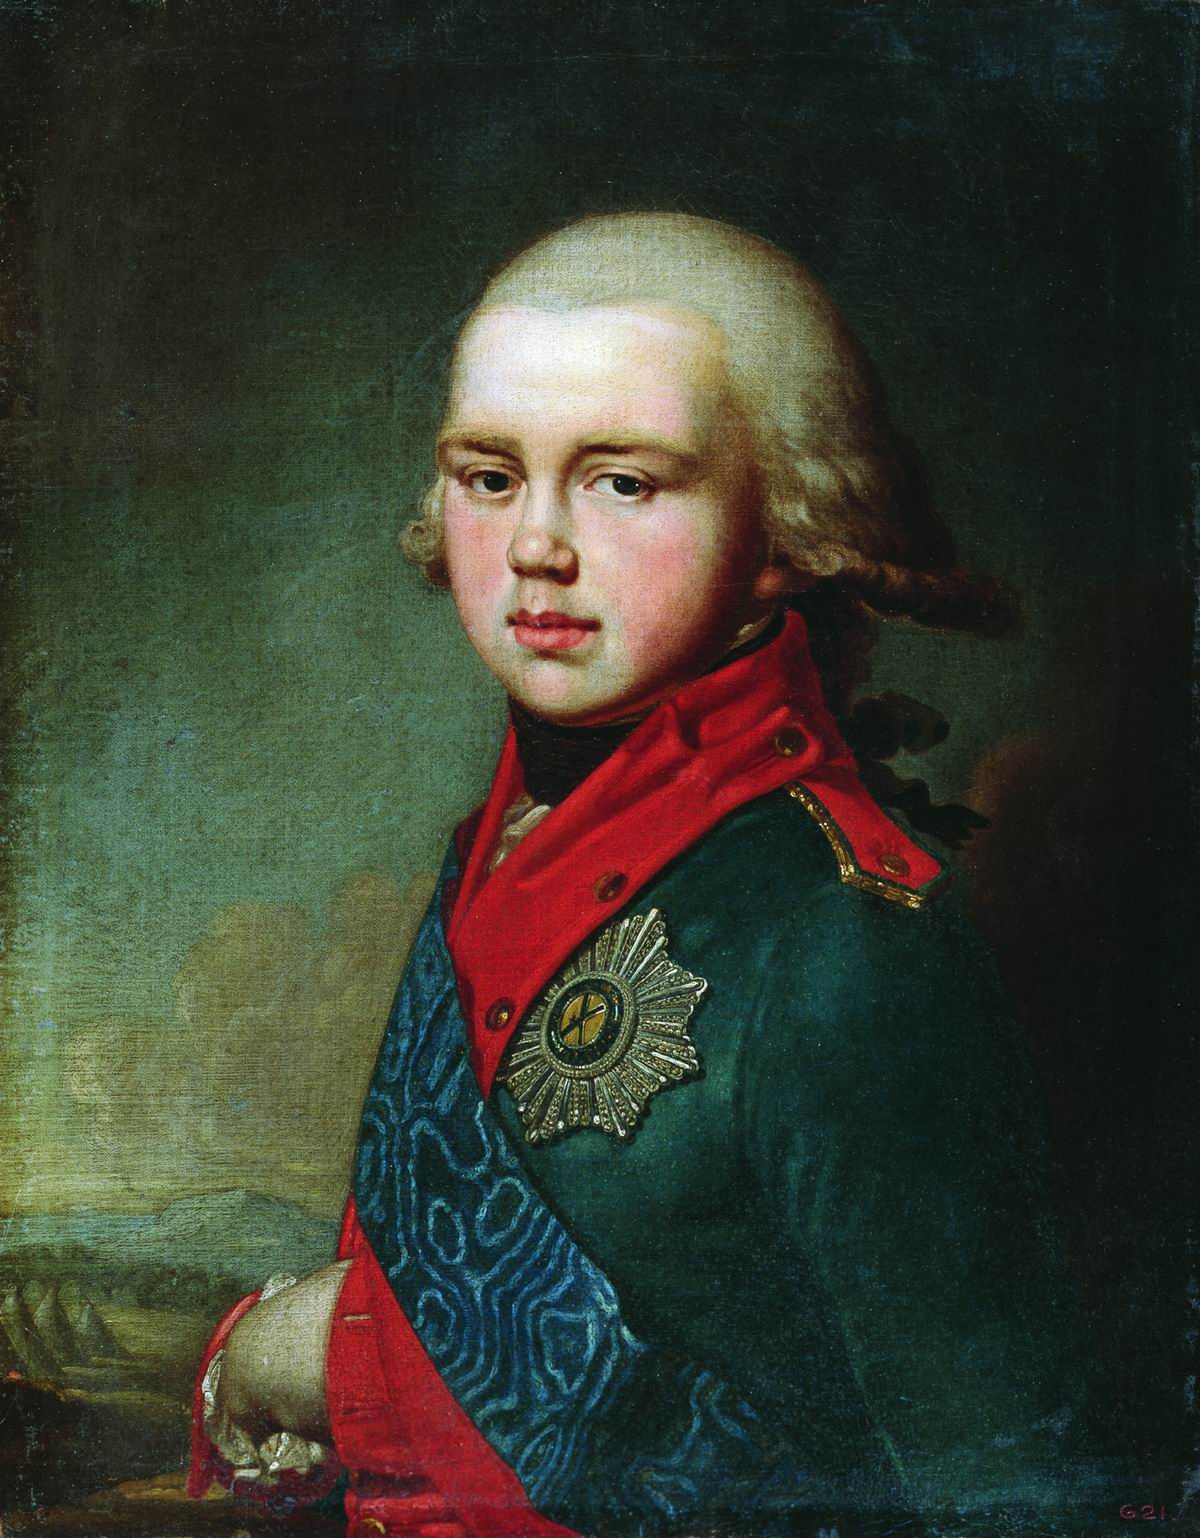 Боровиковский. Портрет Великого князя Константина Павловича. 1795